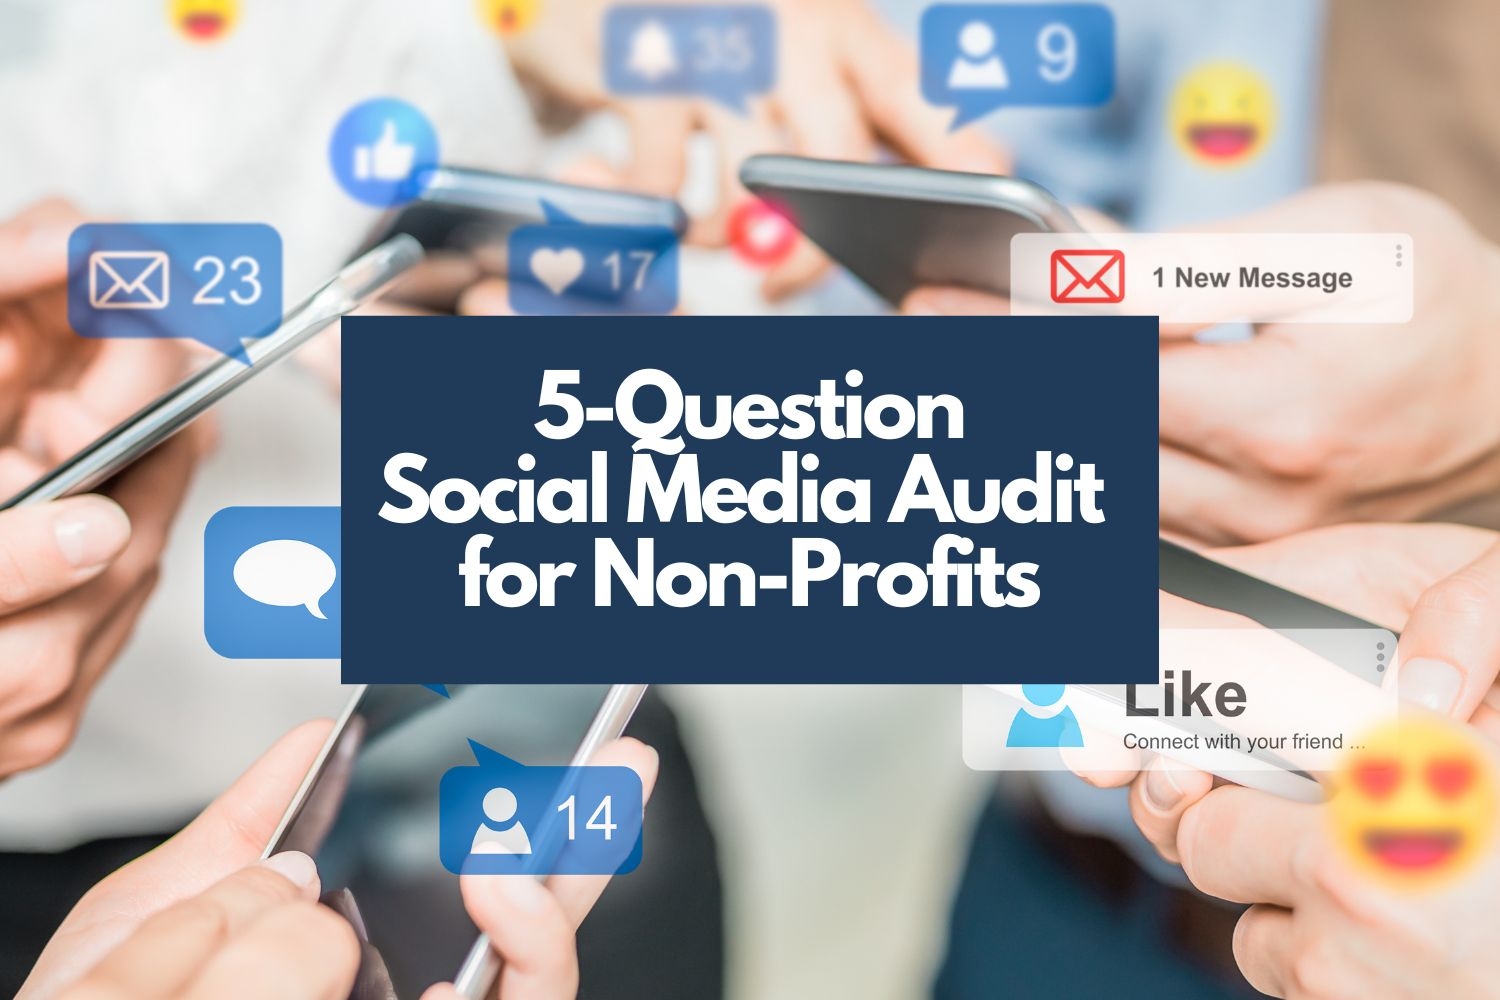 A 5-Question Social Media Audit